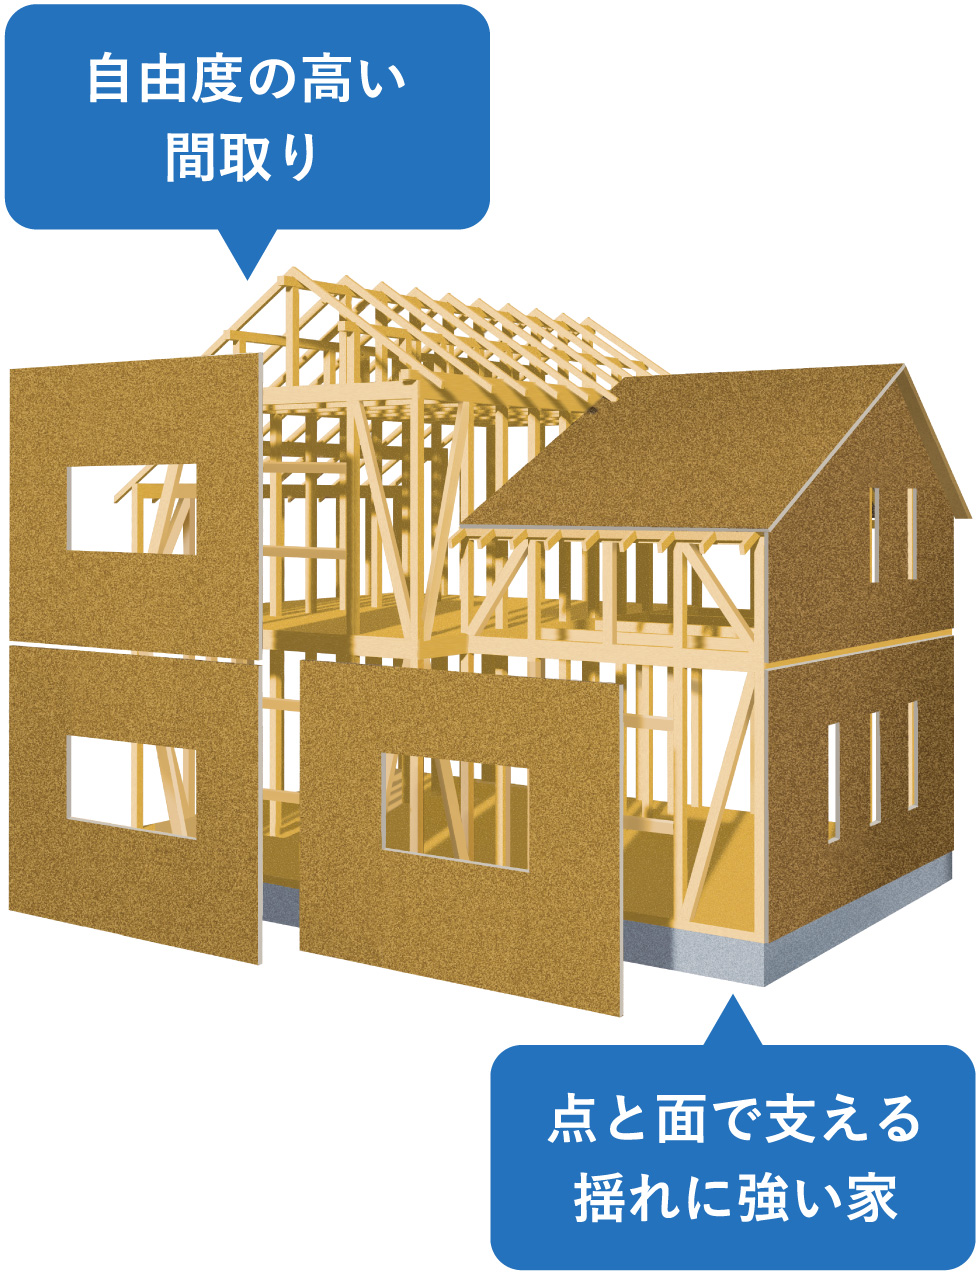 Kurumuの家は2つの工法の長所を活かし合う、自由と安心を叶える構造。